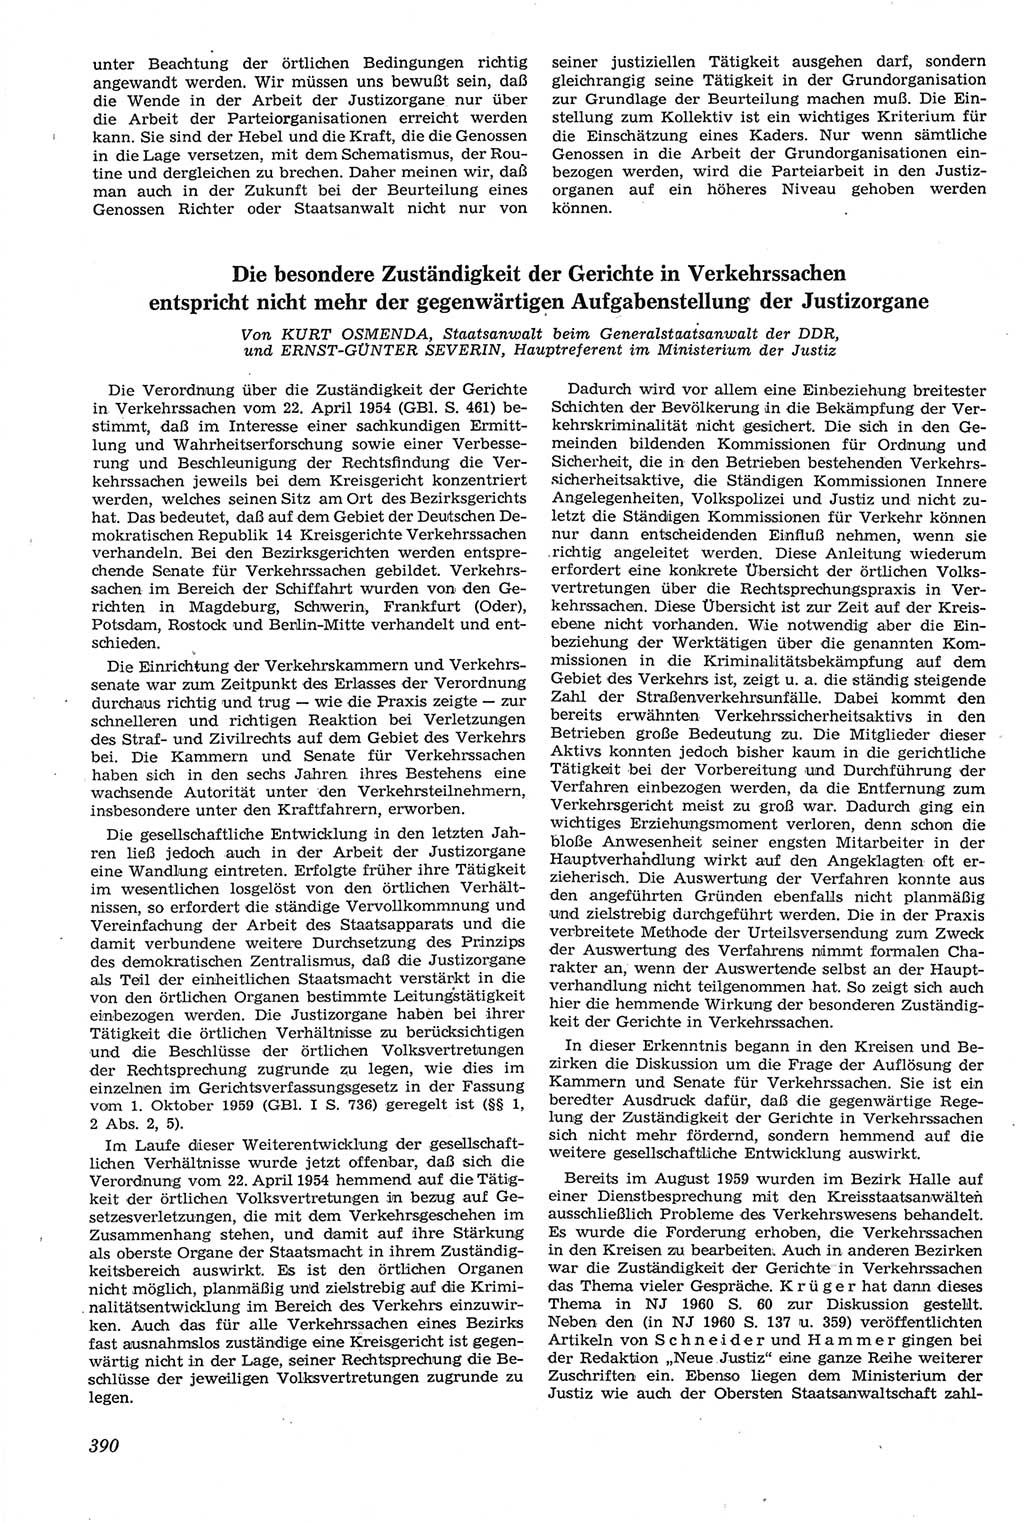 Neue Justiz (NJ), Zeitschrift für Recht und Rechtswissenschaft [Deutsche Demokratische Republik (DDR)], 14. Jahrgang 1960, Seite 390 (NJ DDR 1960, S. 390)